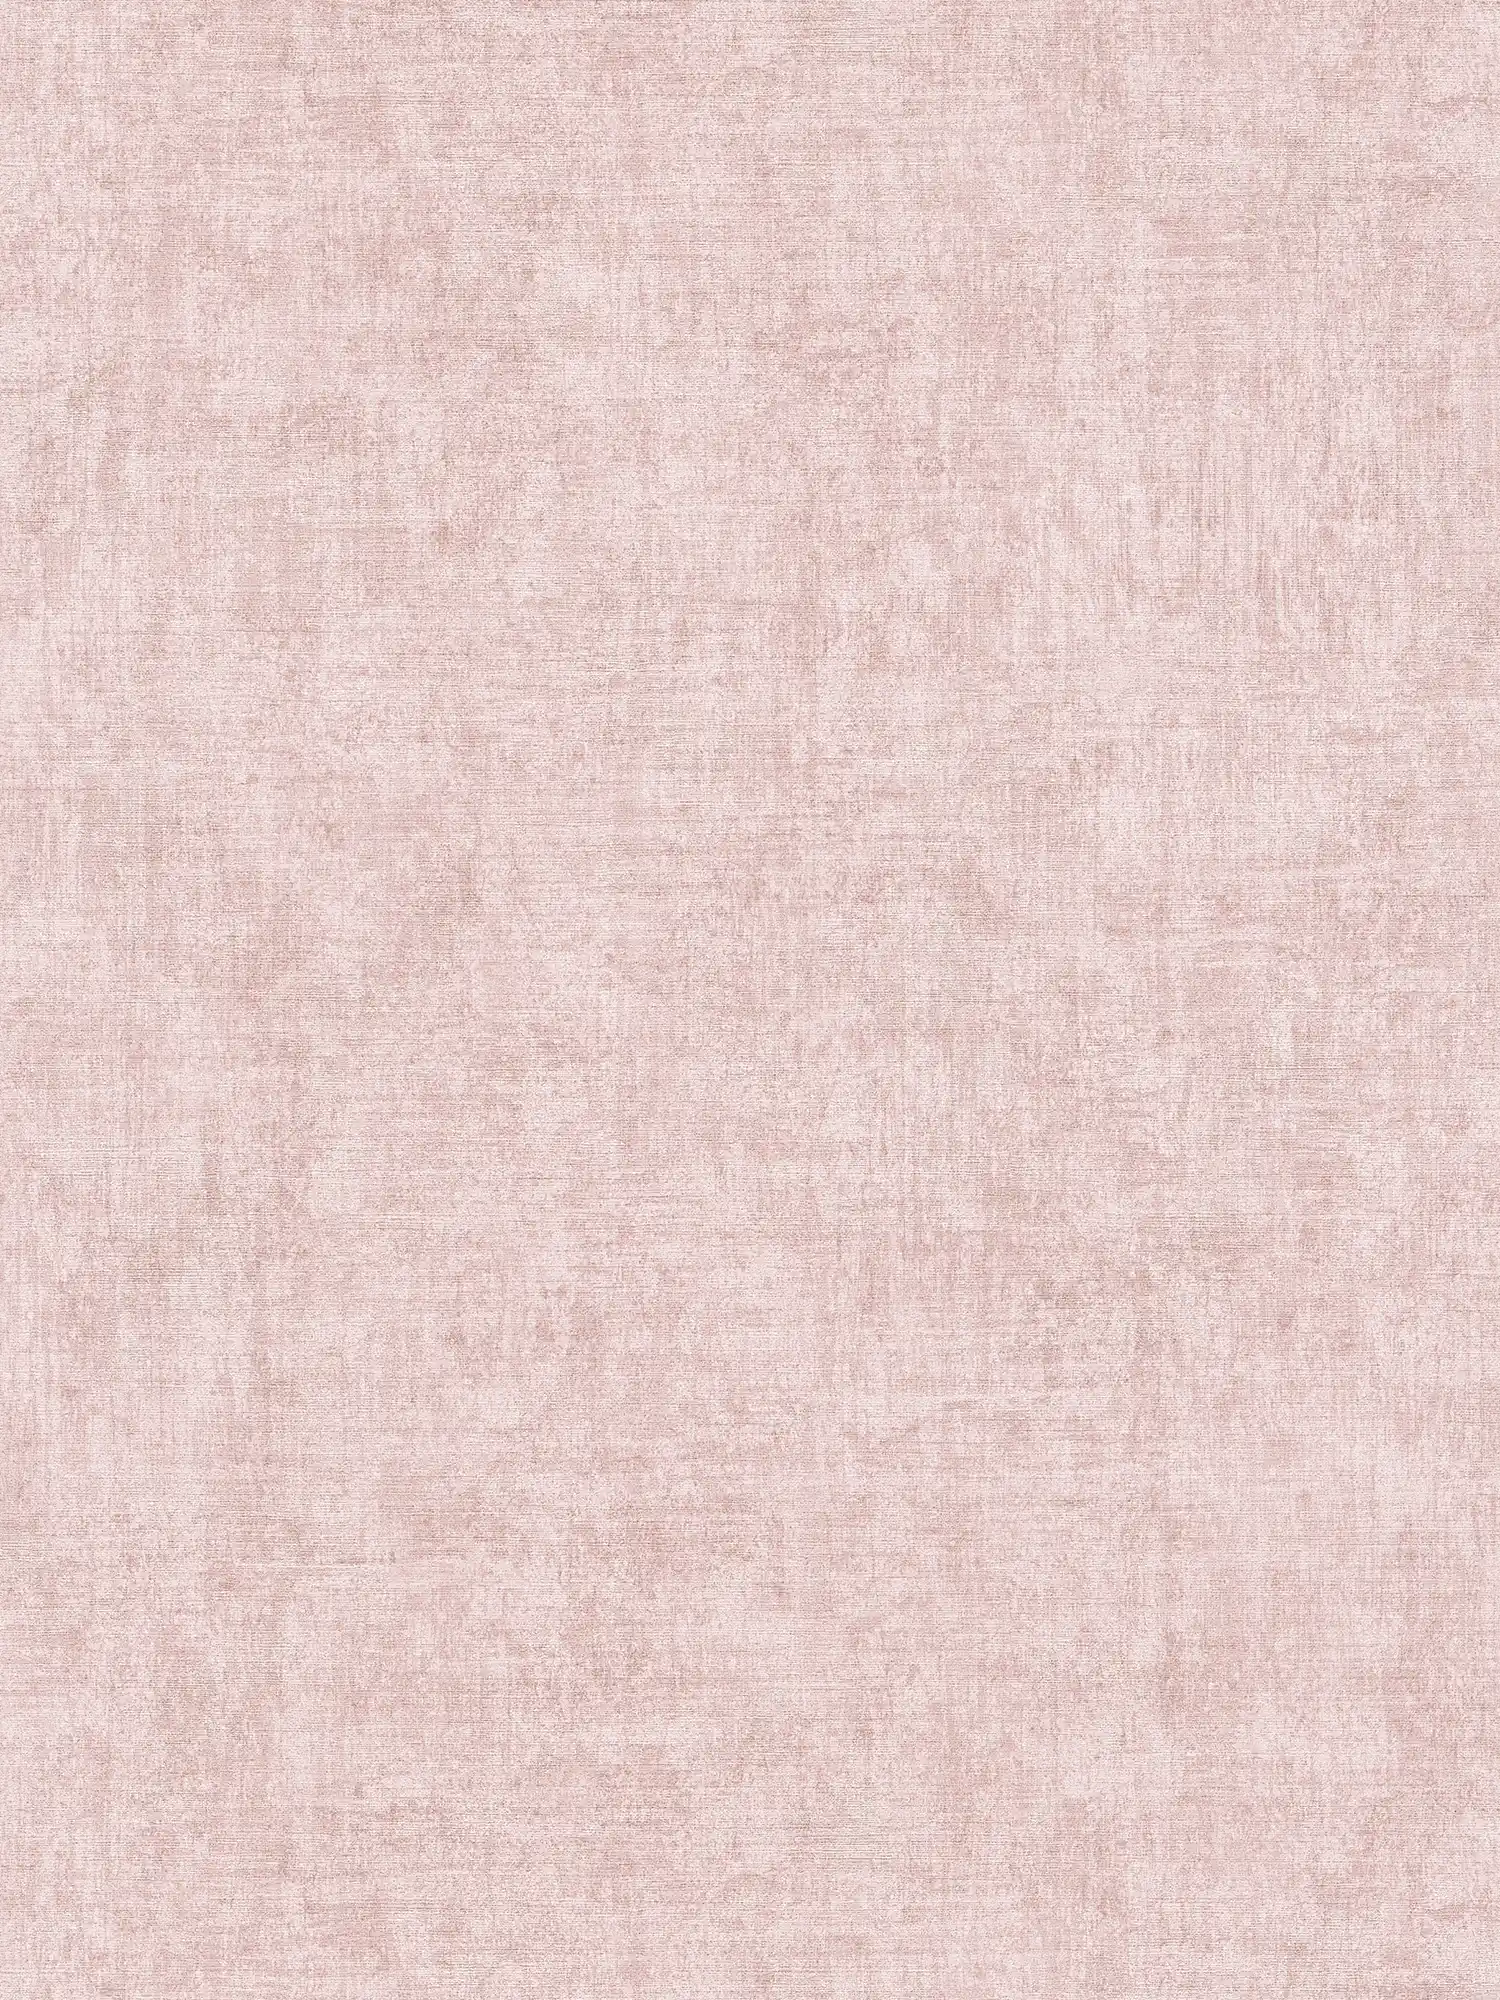 Papel pintado no tejido liso, moteado, con textura - rosa
